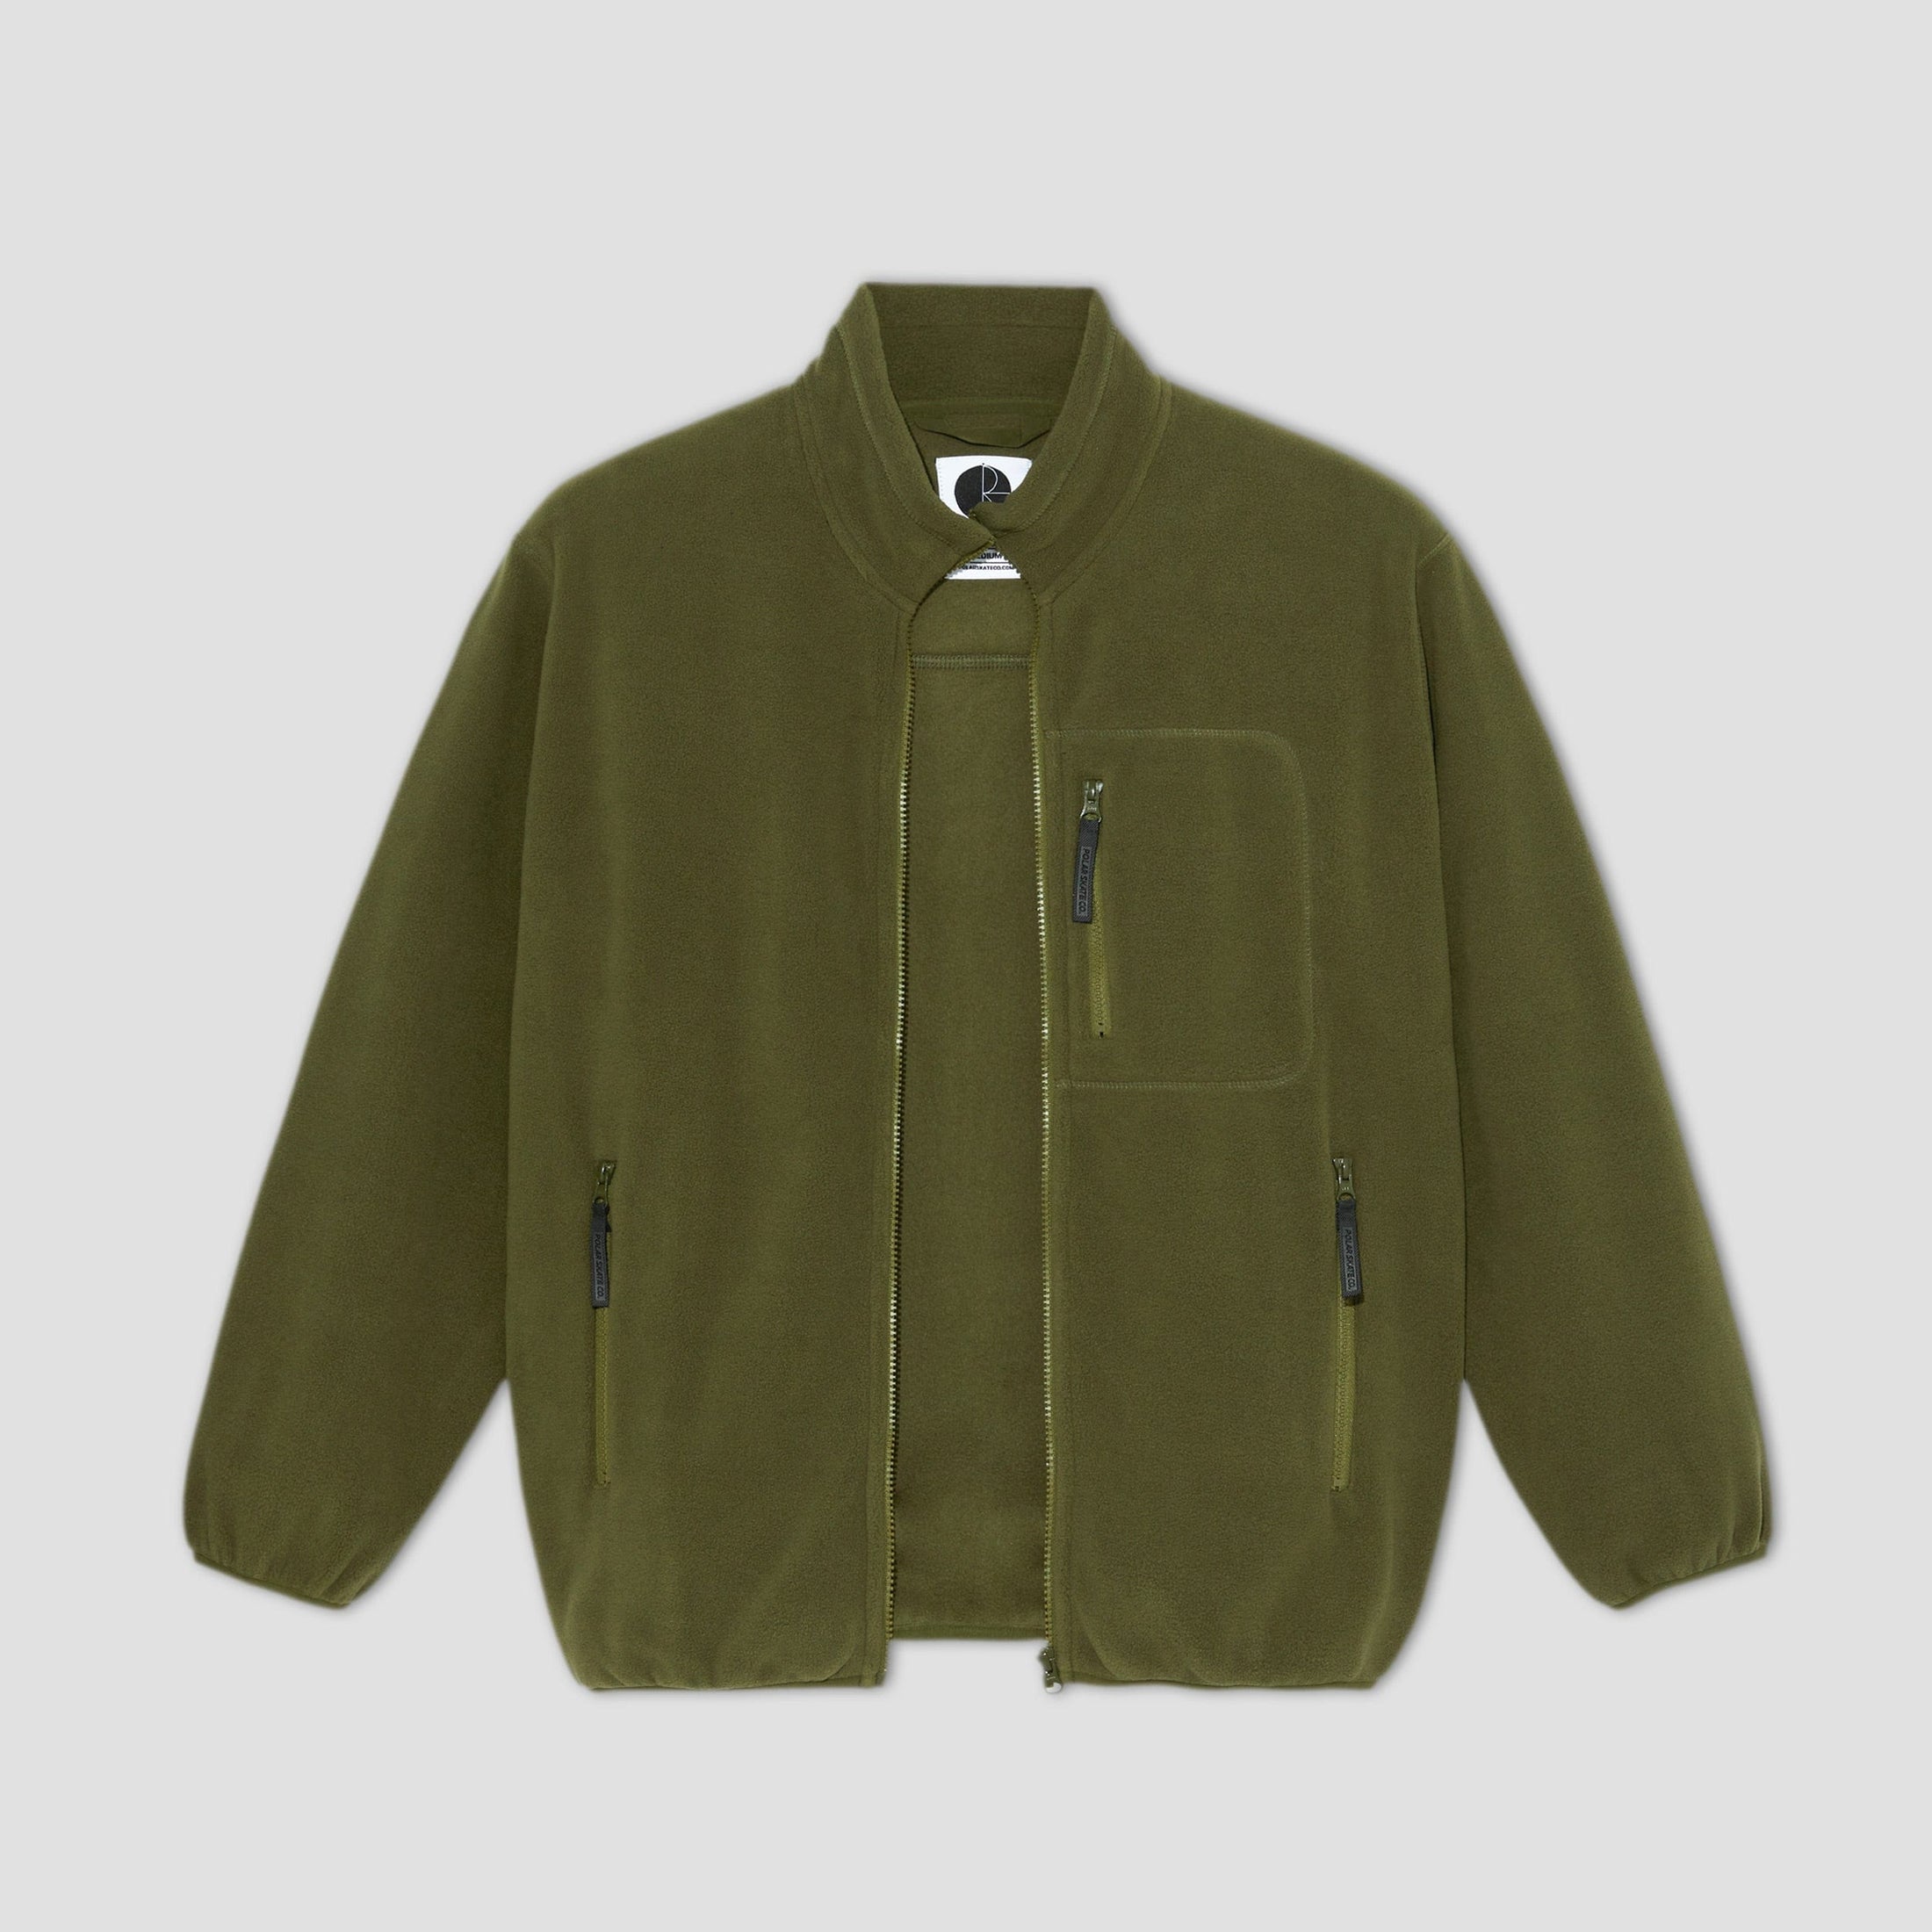 Polar Basic Fleece Jacket Army Green